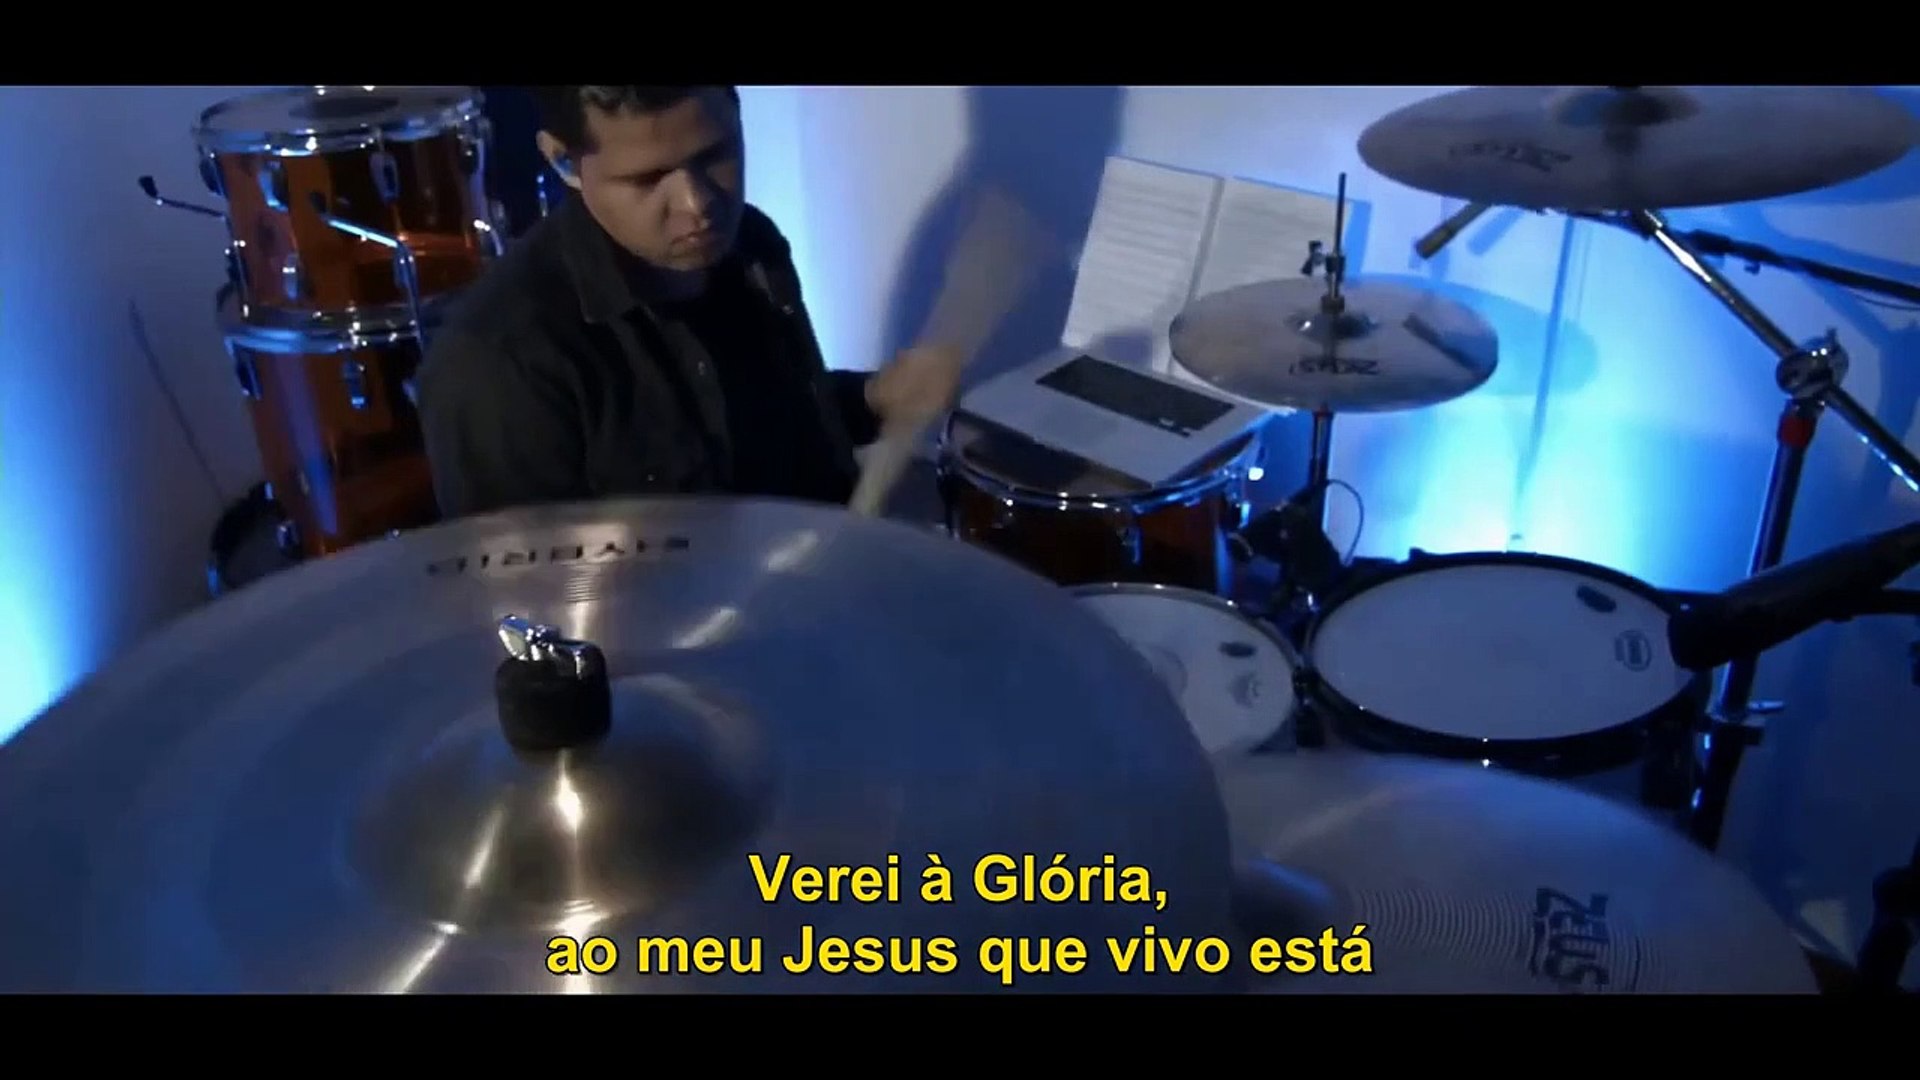 Fernandinho - Alvo Mais que a Neve (Ao Vivo) ♪ +Letra - Vídeo